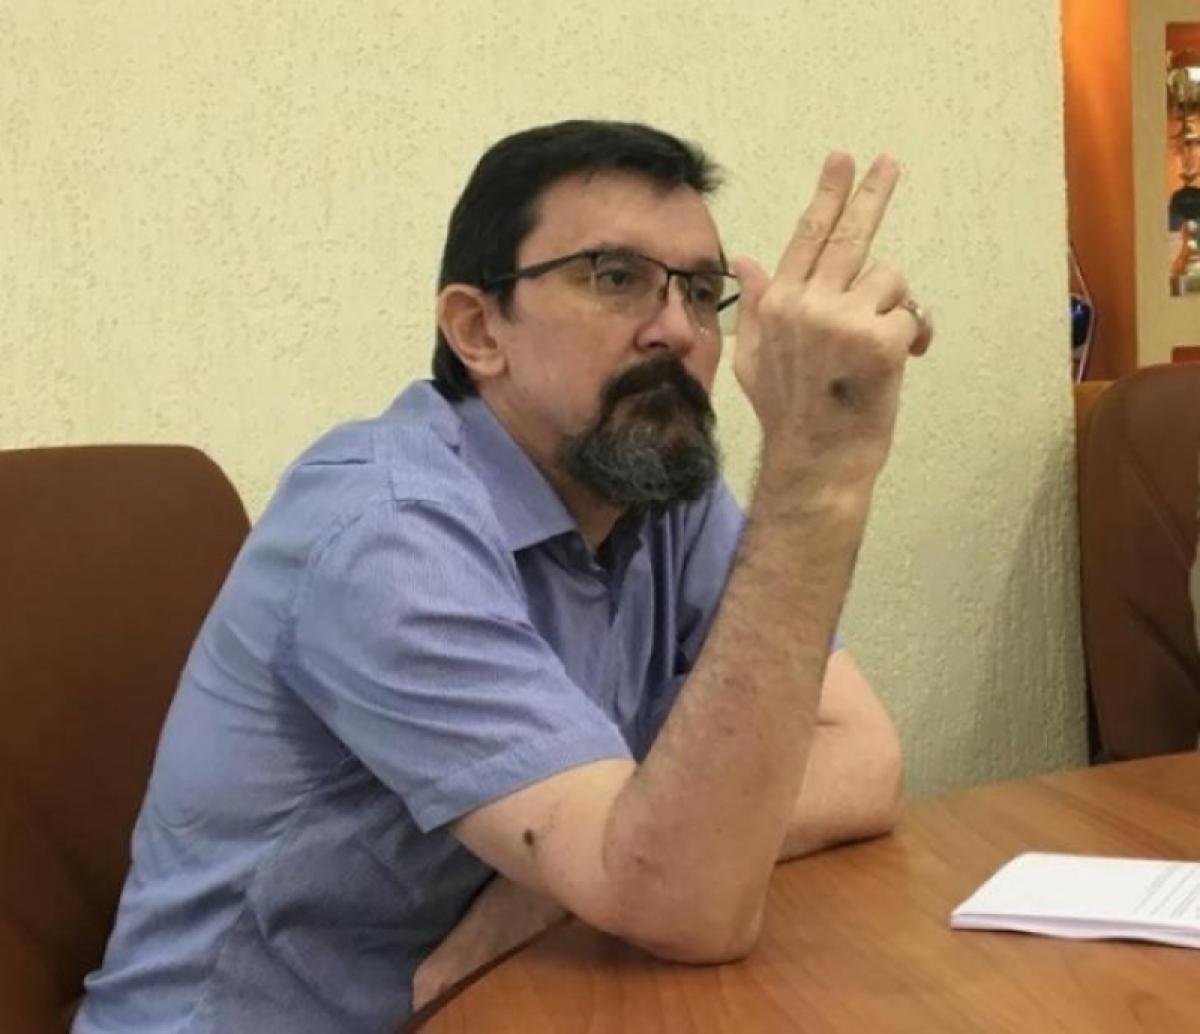 Дмитрий Чернышевский: «Голос у меня мощнее, я перекричал троих коммунистов!»